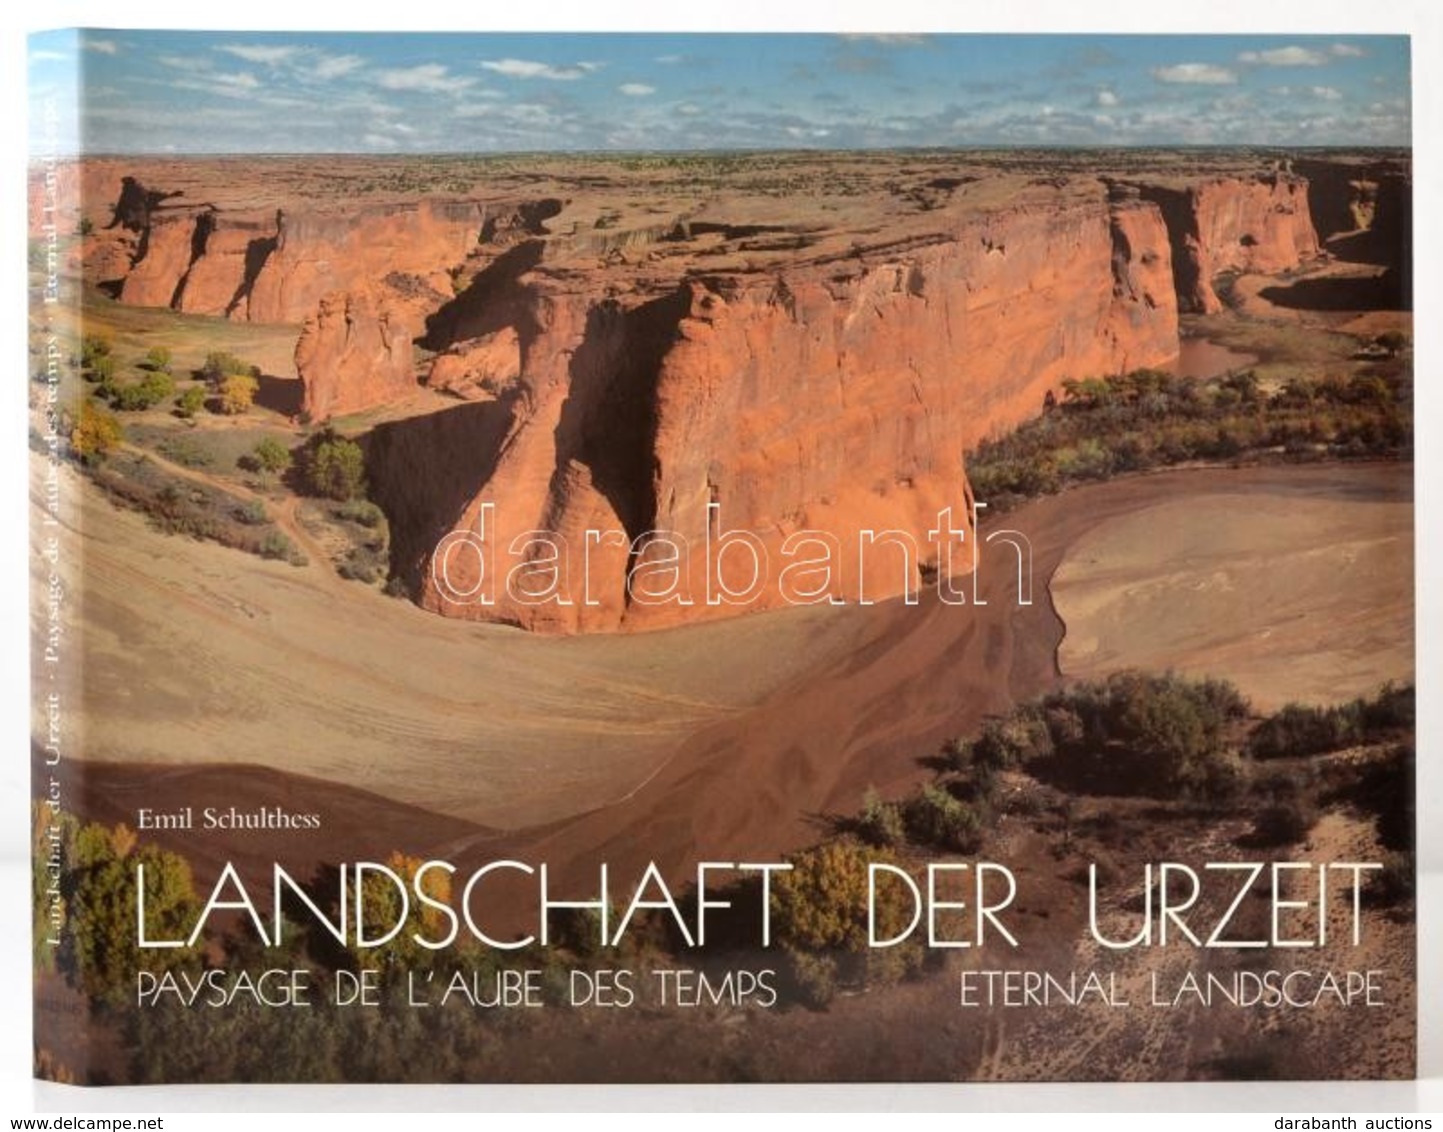 Emil Schulthess-Sigmund Widmer: Landschaft Der Urzeit. Paysage De L'Aube Des Temps. Eternal Landscape. Zürich, 1989, Art - Unclassified